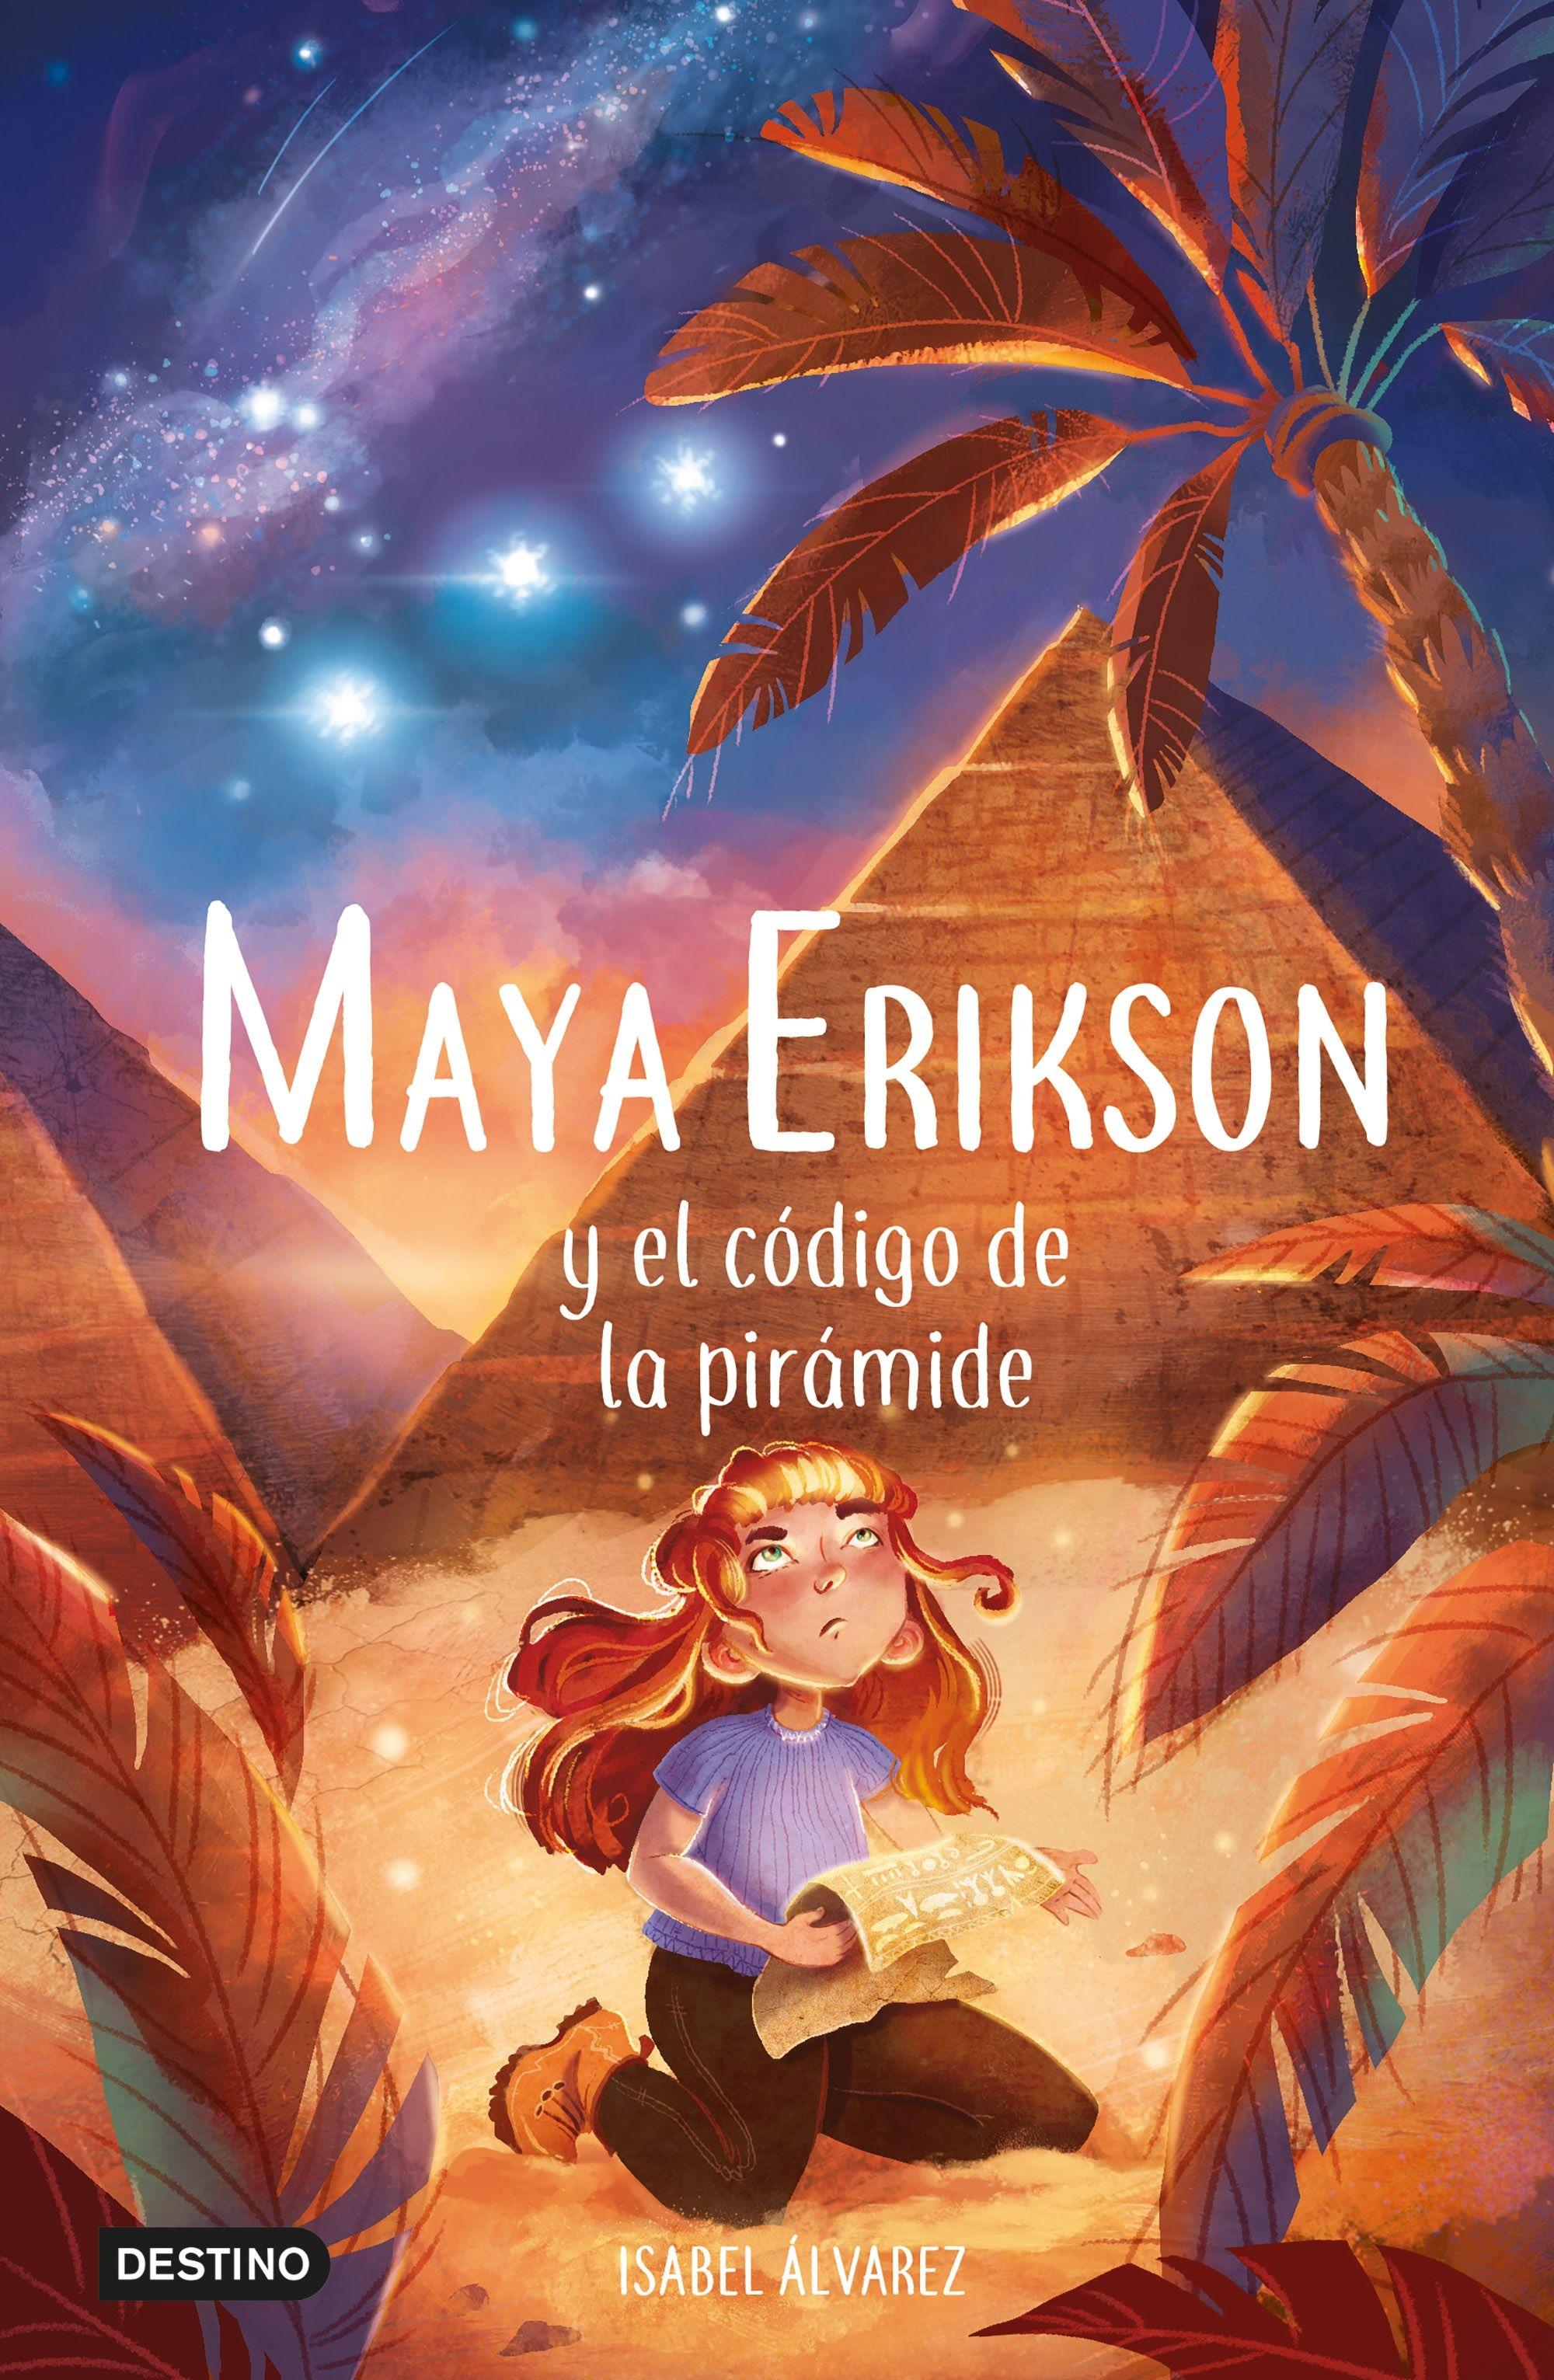 Maya Erikson 2 "El código de la pirámide"